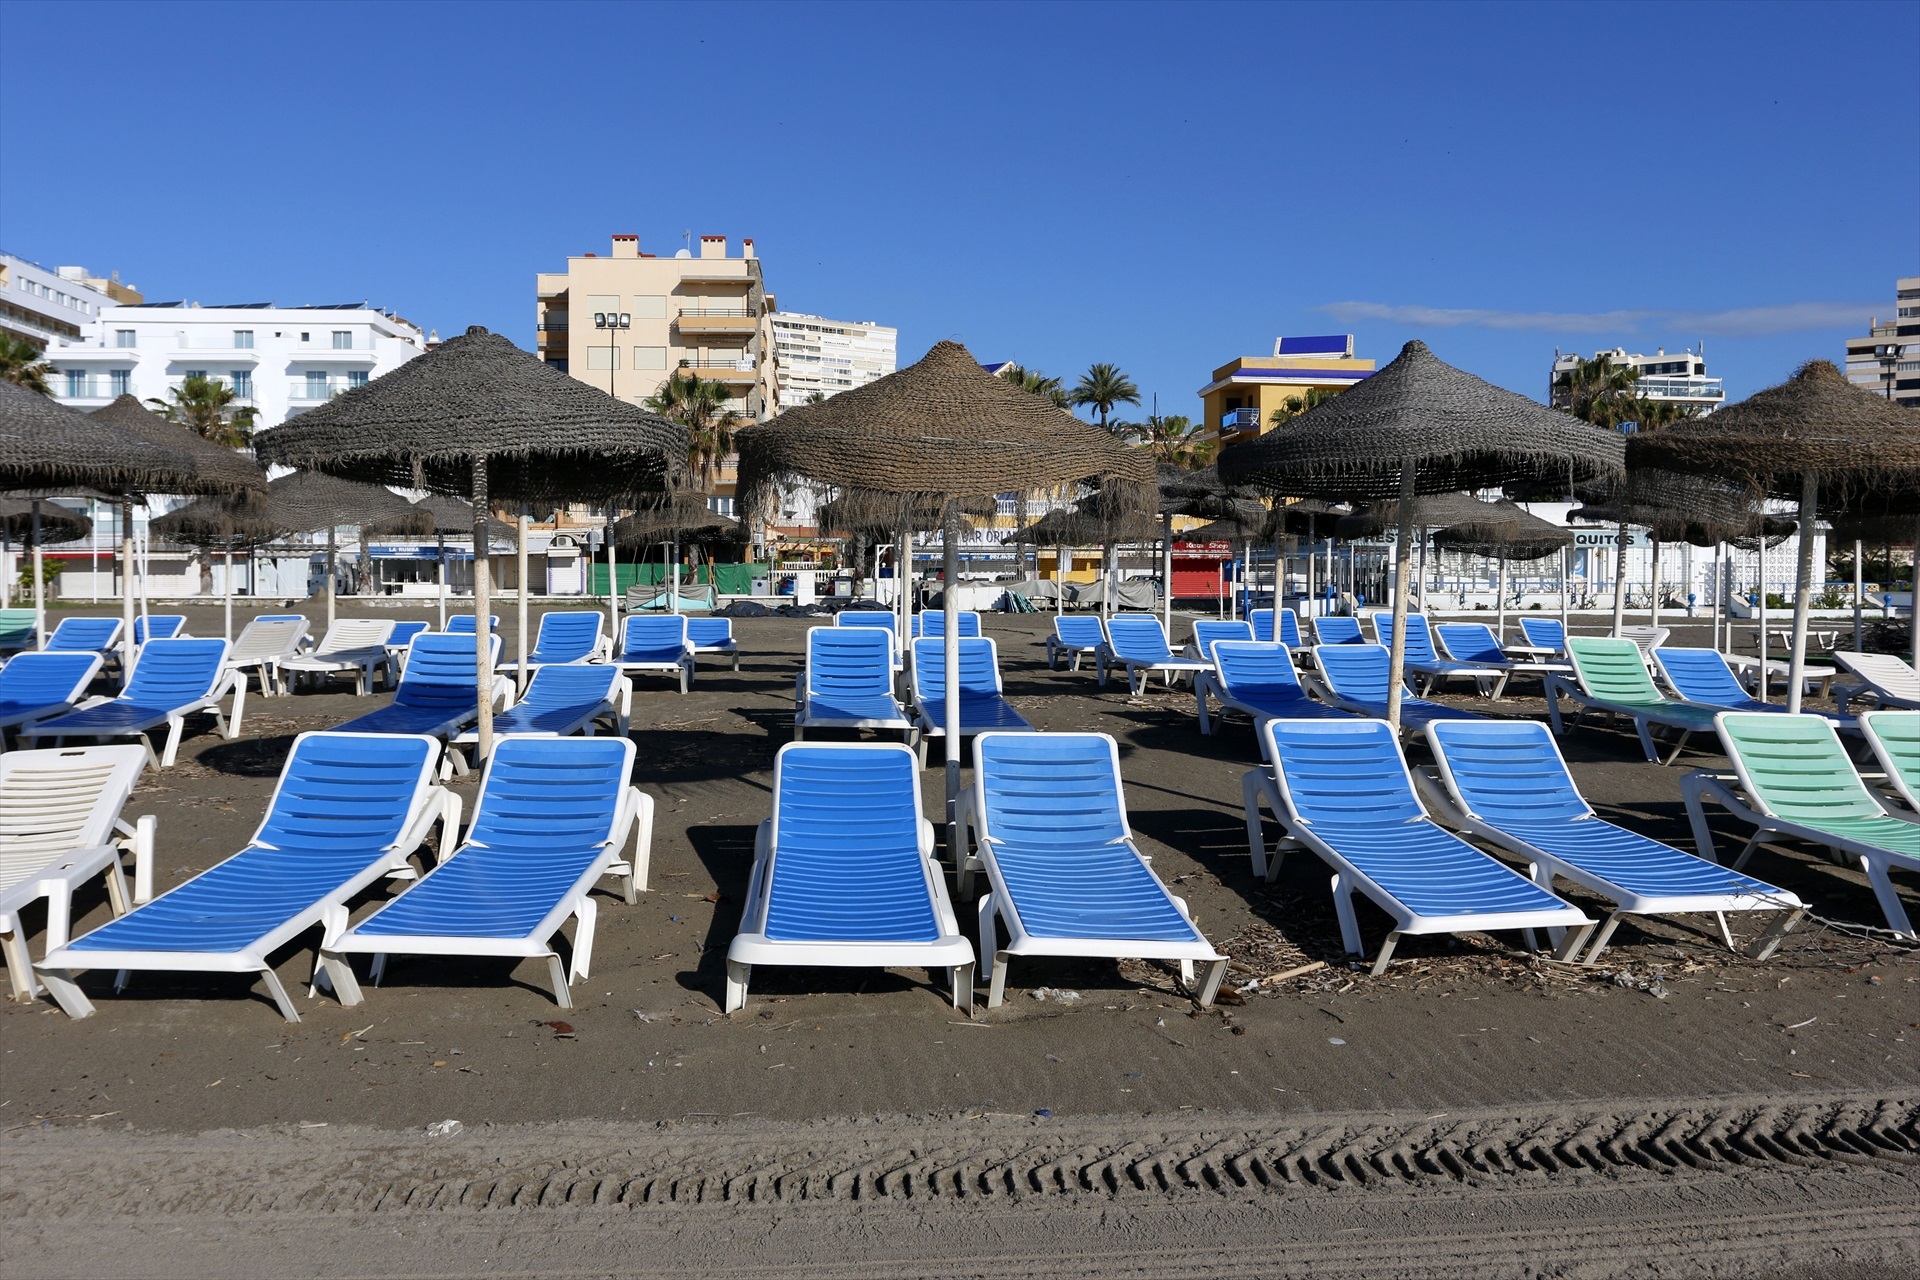 Hoteles en la playa Playamar en Torremolinos donde se encuentra cerrada debido al decreto de Estado de Alarma por el COVID-19. (Foto: Álex Zea / Europa Press)